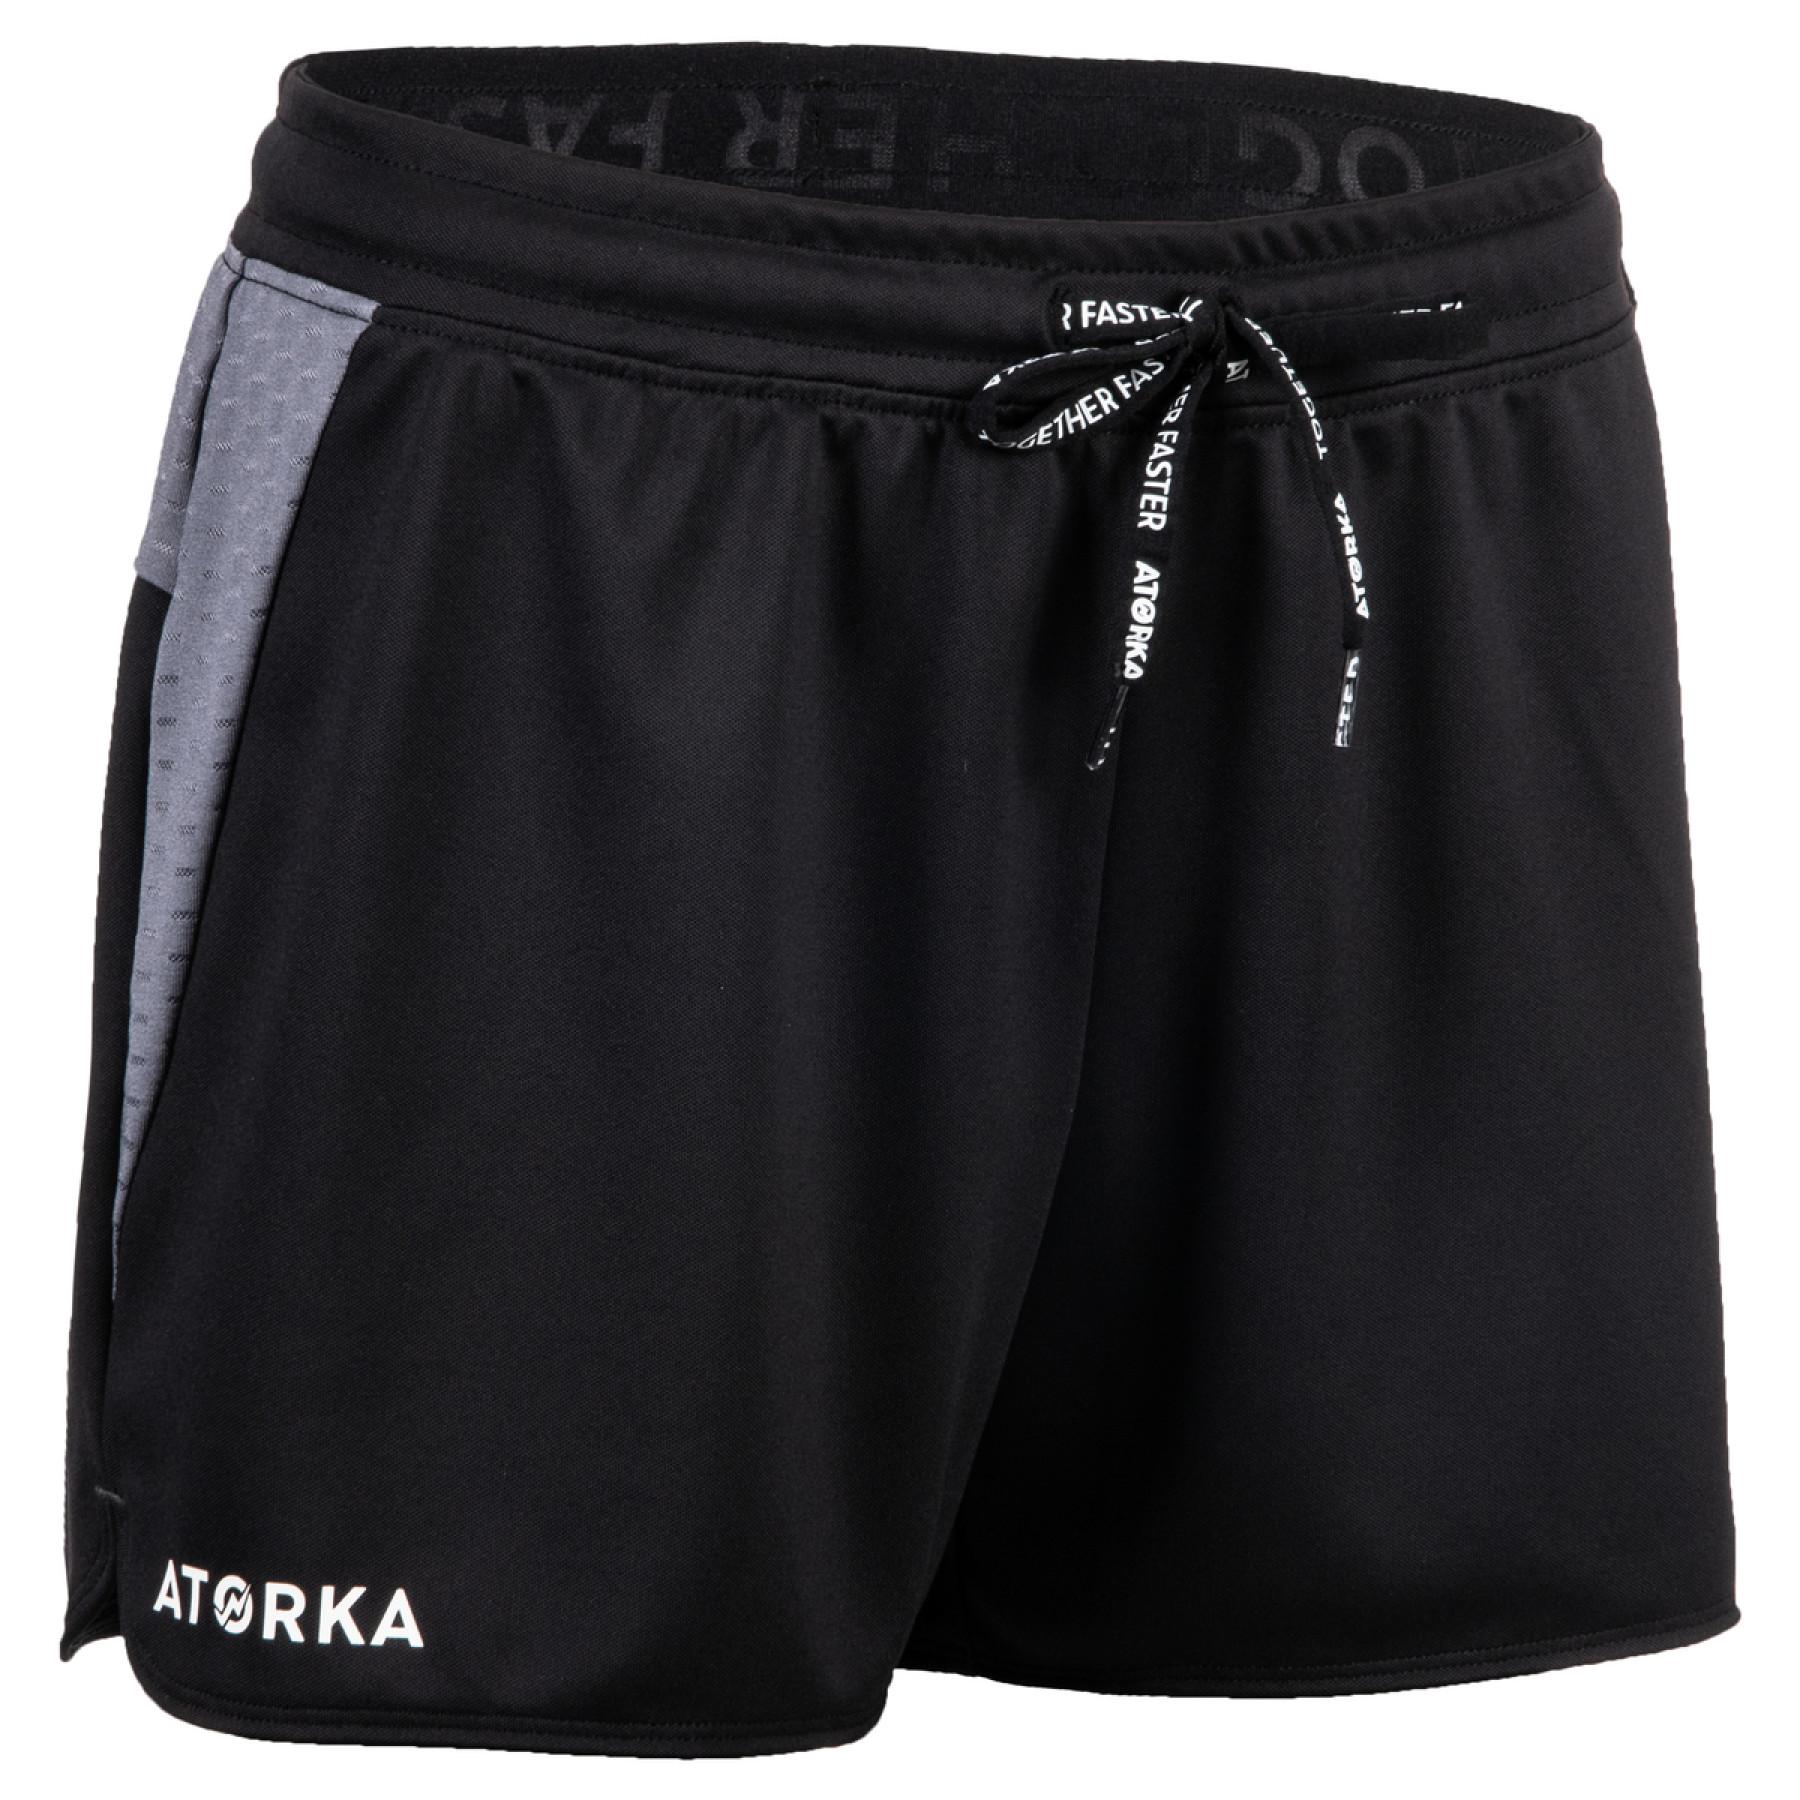 Pantalones cortos de mujer Atorka HS500S